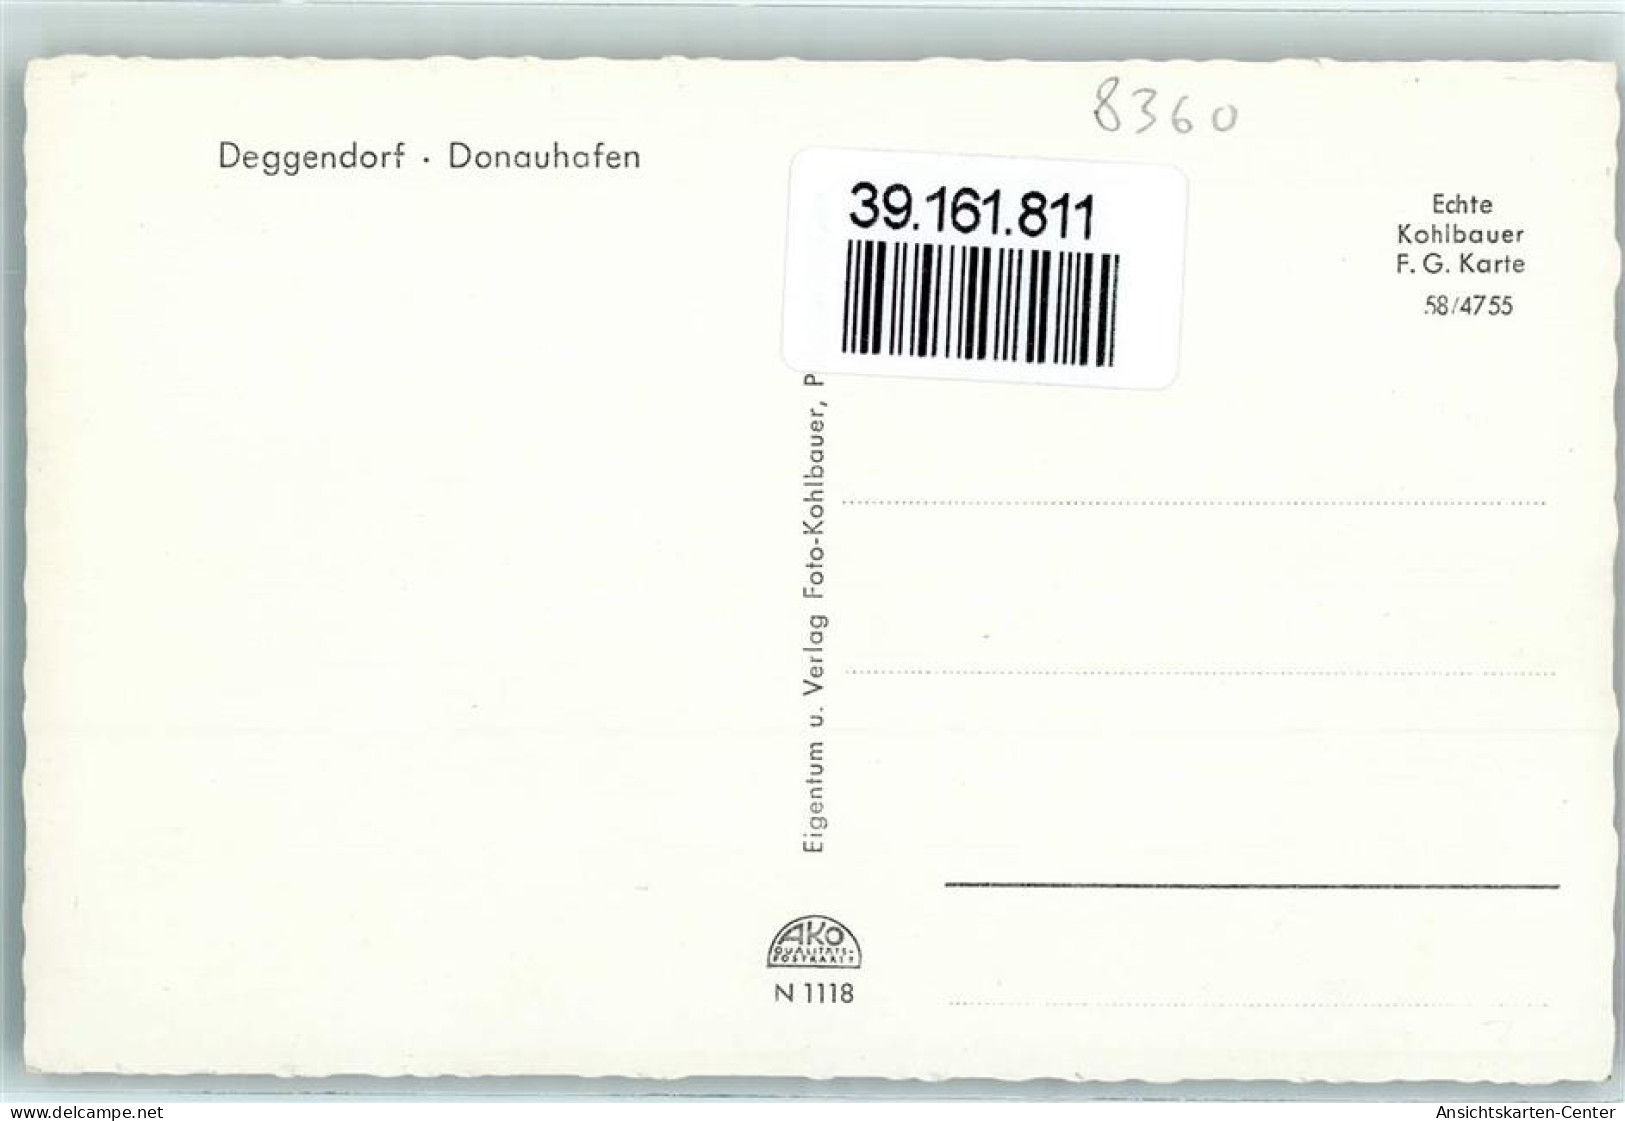 39161811 - Deggendorf - Deggendorf